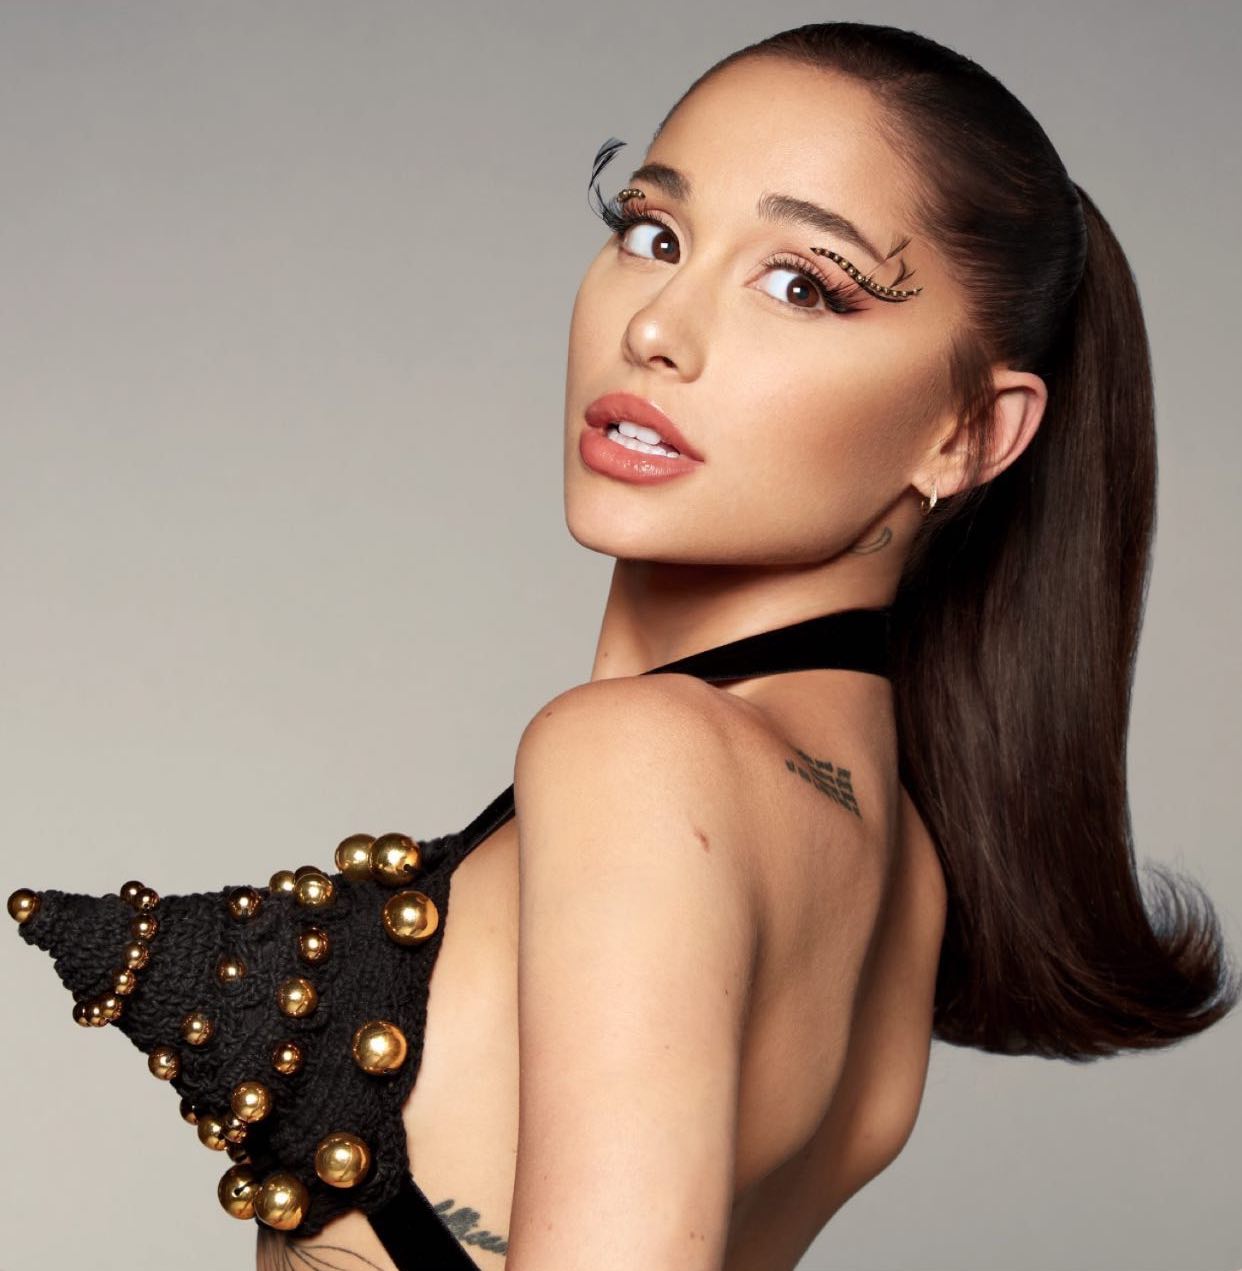 Photos n°1 : Ariana Grande Calls Herself a ‘Cone Tittied Woman’!